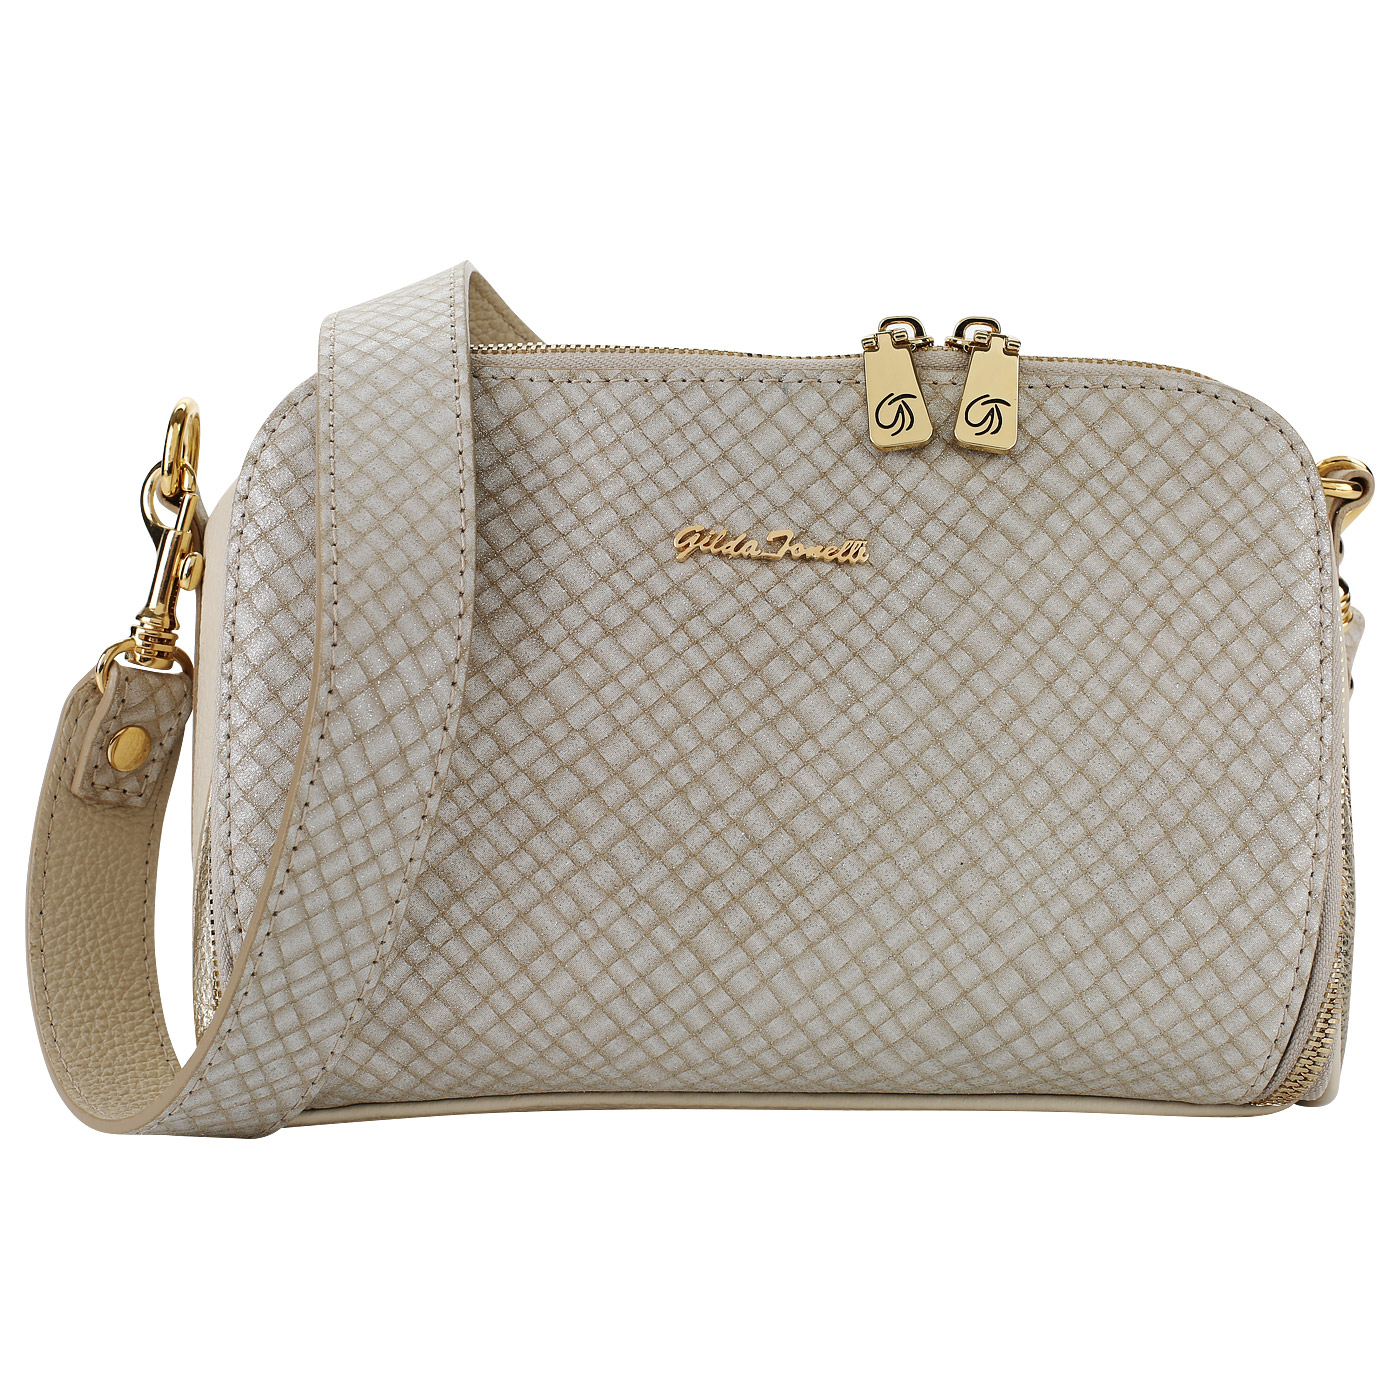 Gilda Tonelli Женская сумочка со съемным ремешком